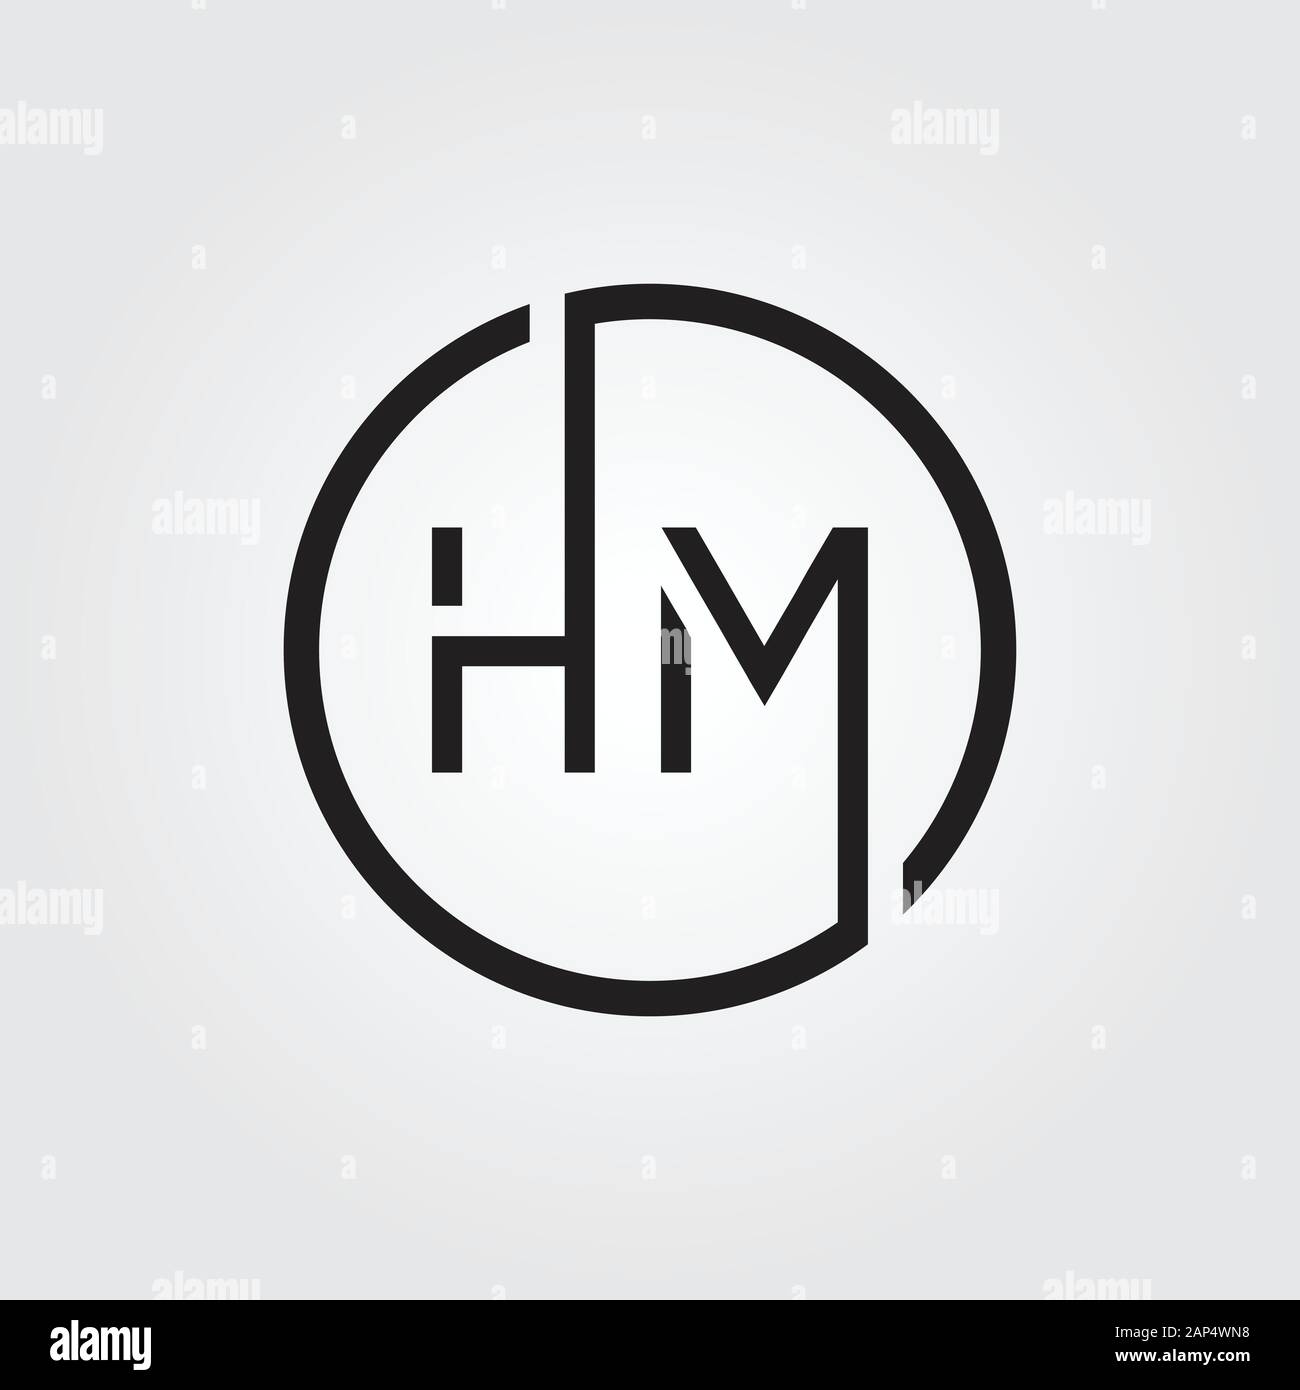 Thiết kế hm logo chuyên nghiệp và độc đáo cho thương hiệu của bạn